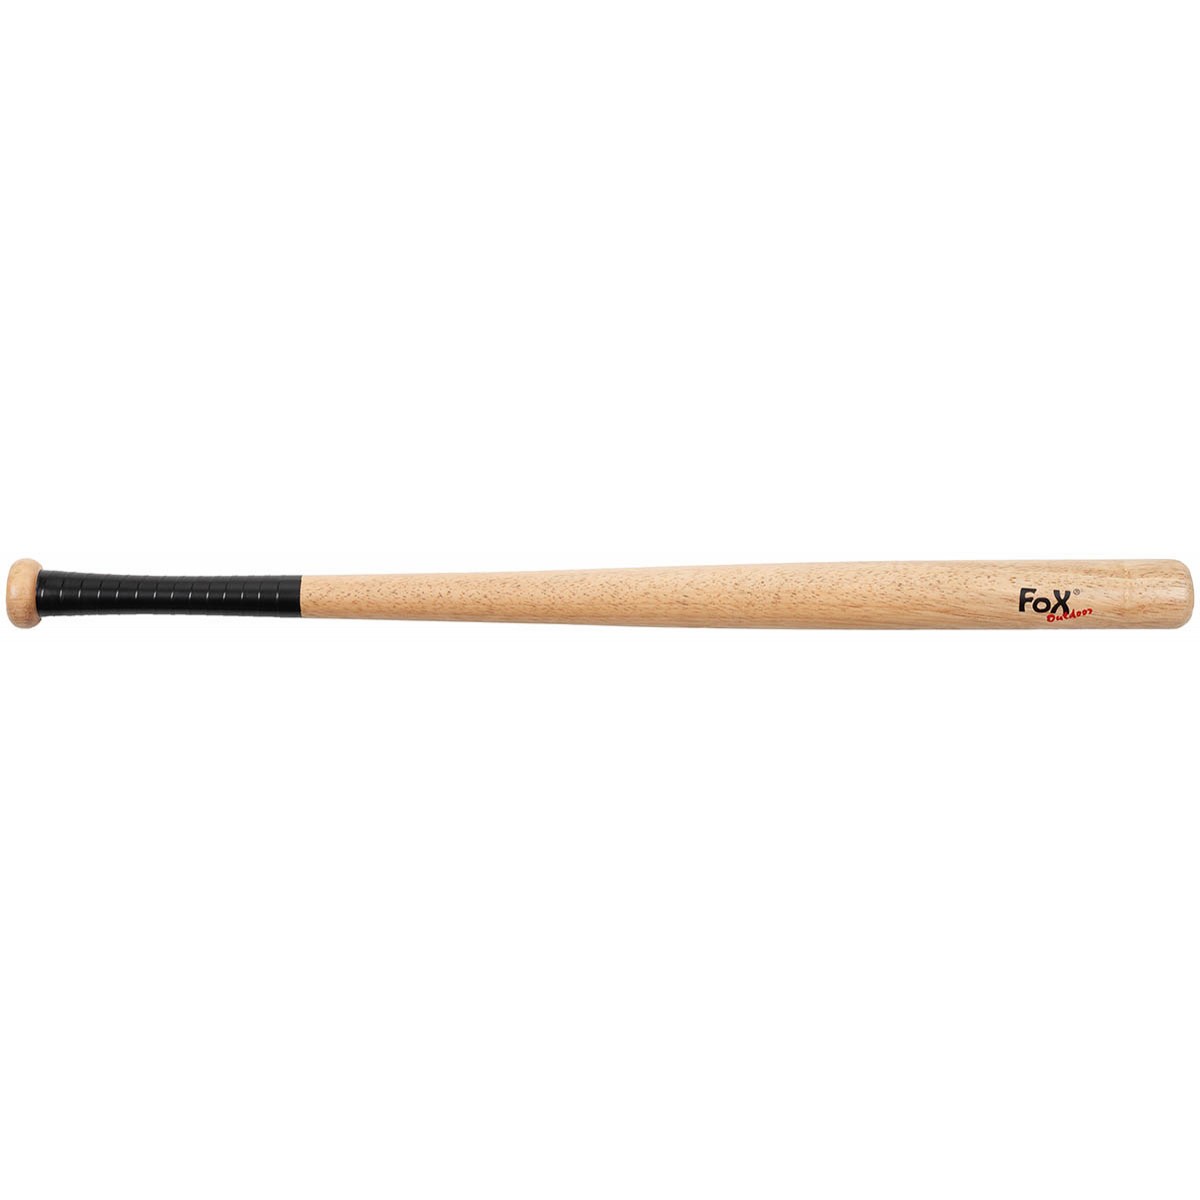 Batte de baseball FOX bois 81 cm (32